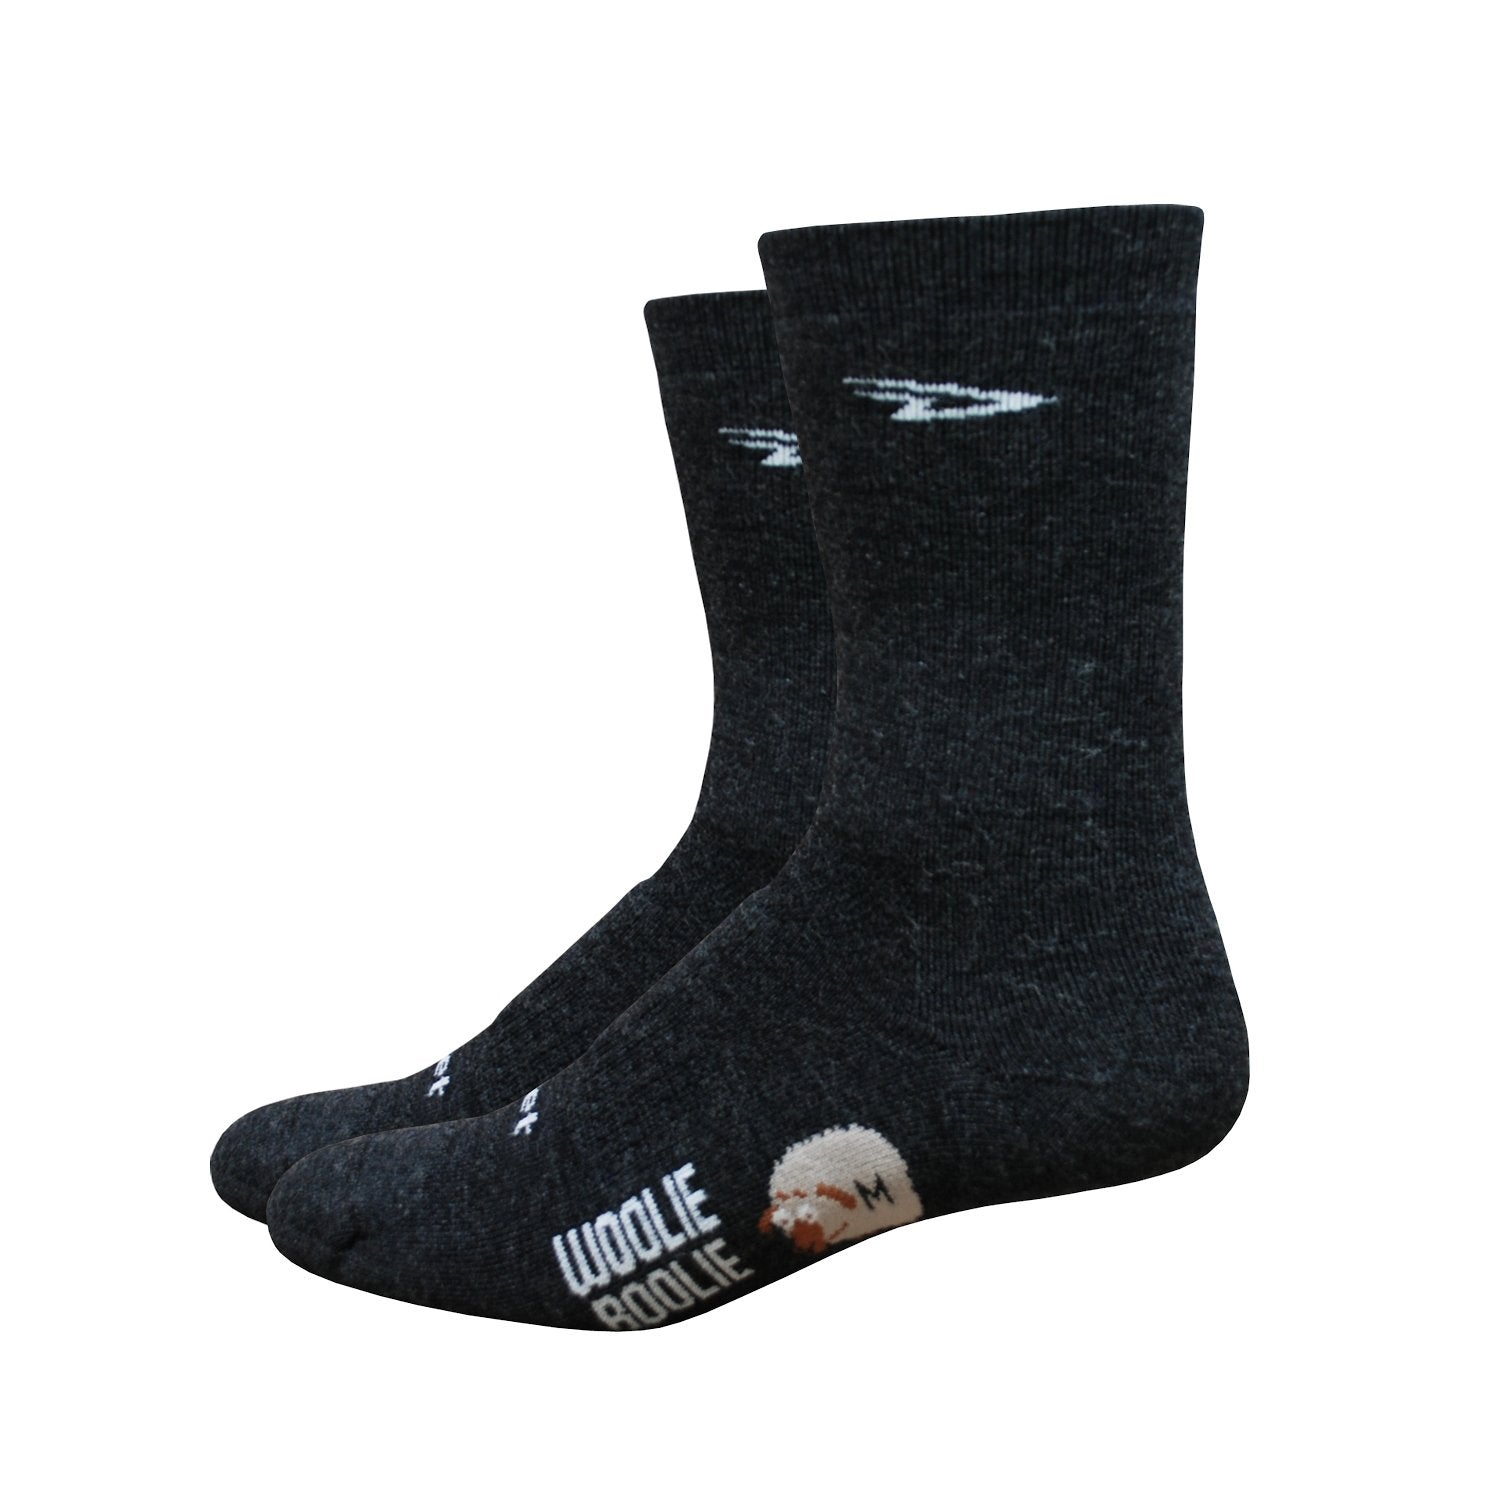 DeFeet Woolie Boolie 2 Socks - 6 inch